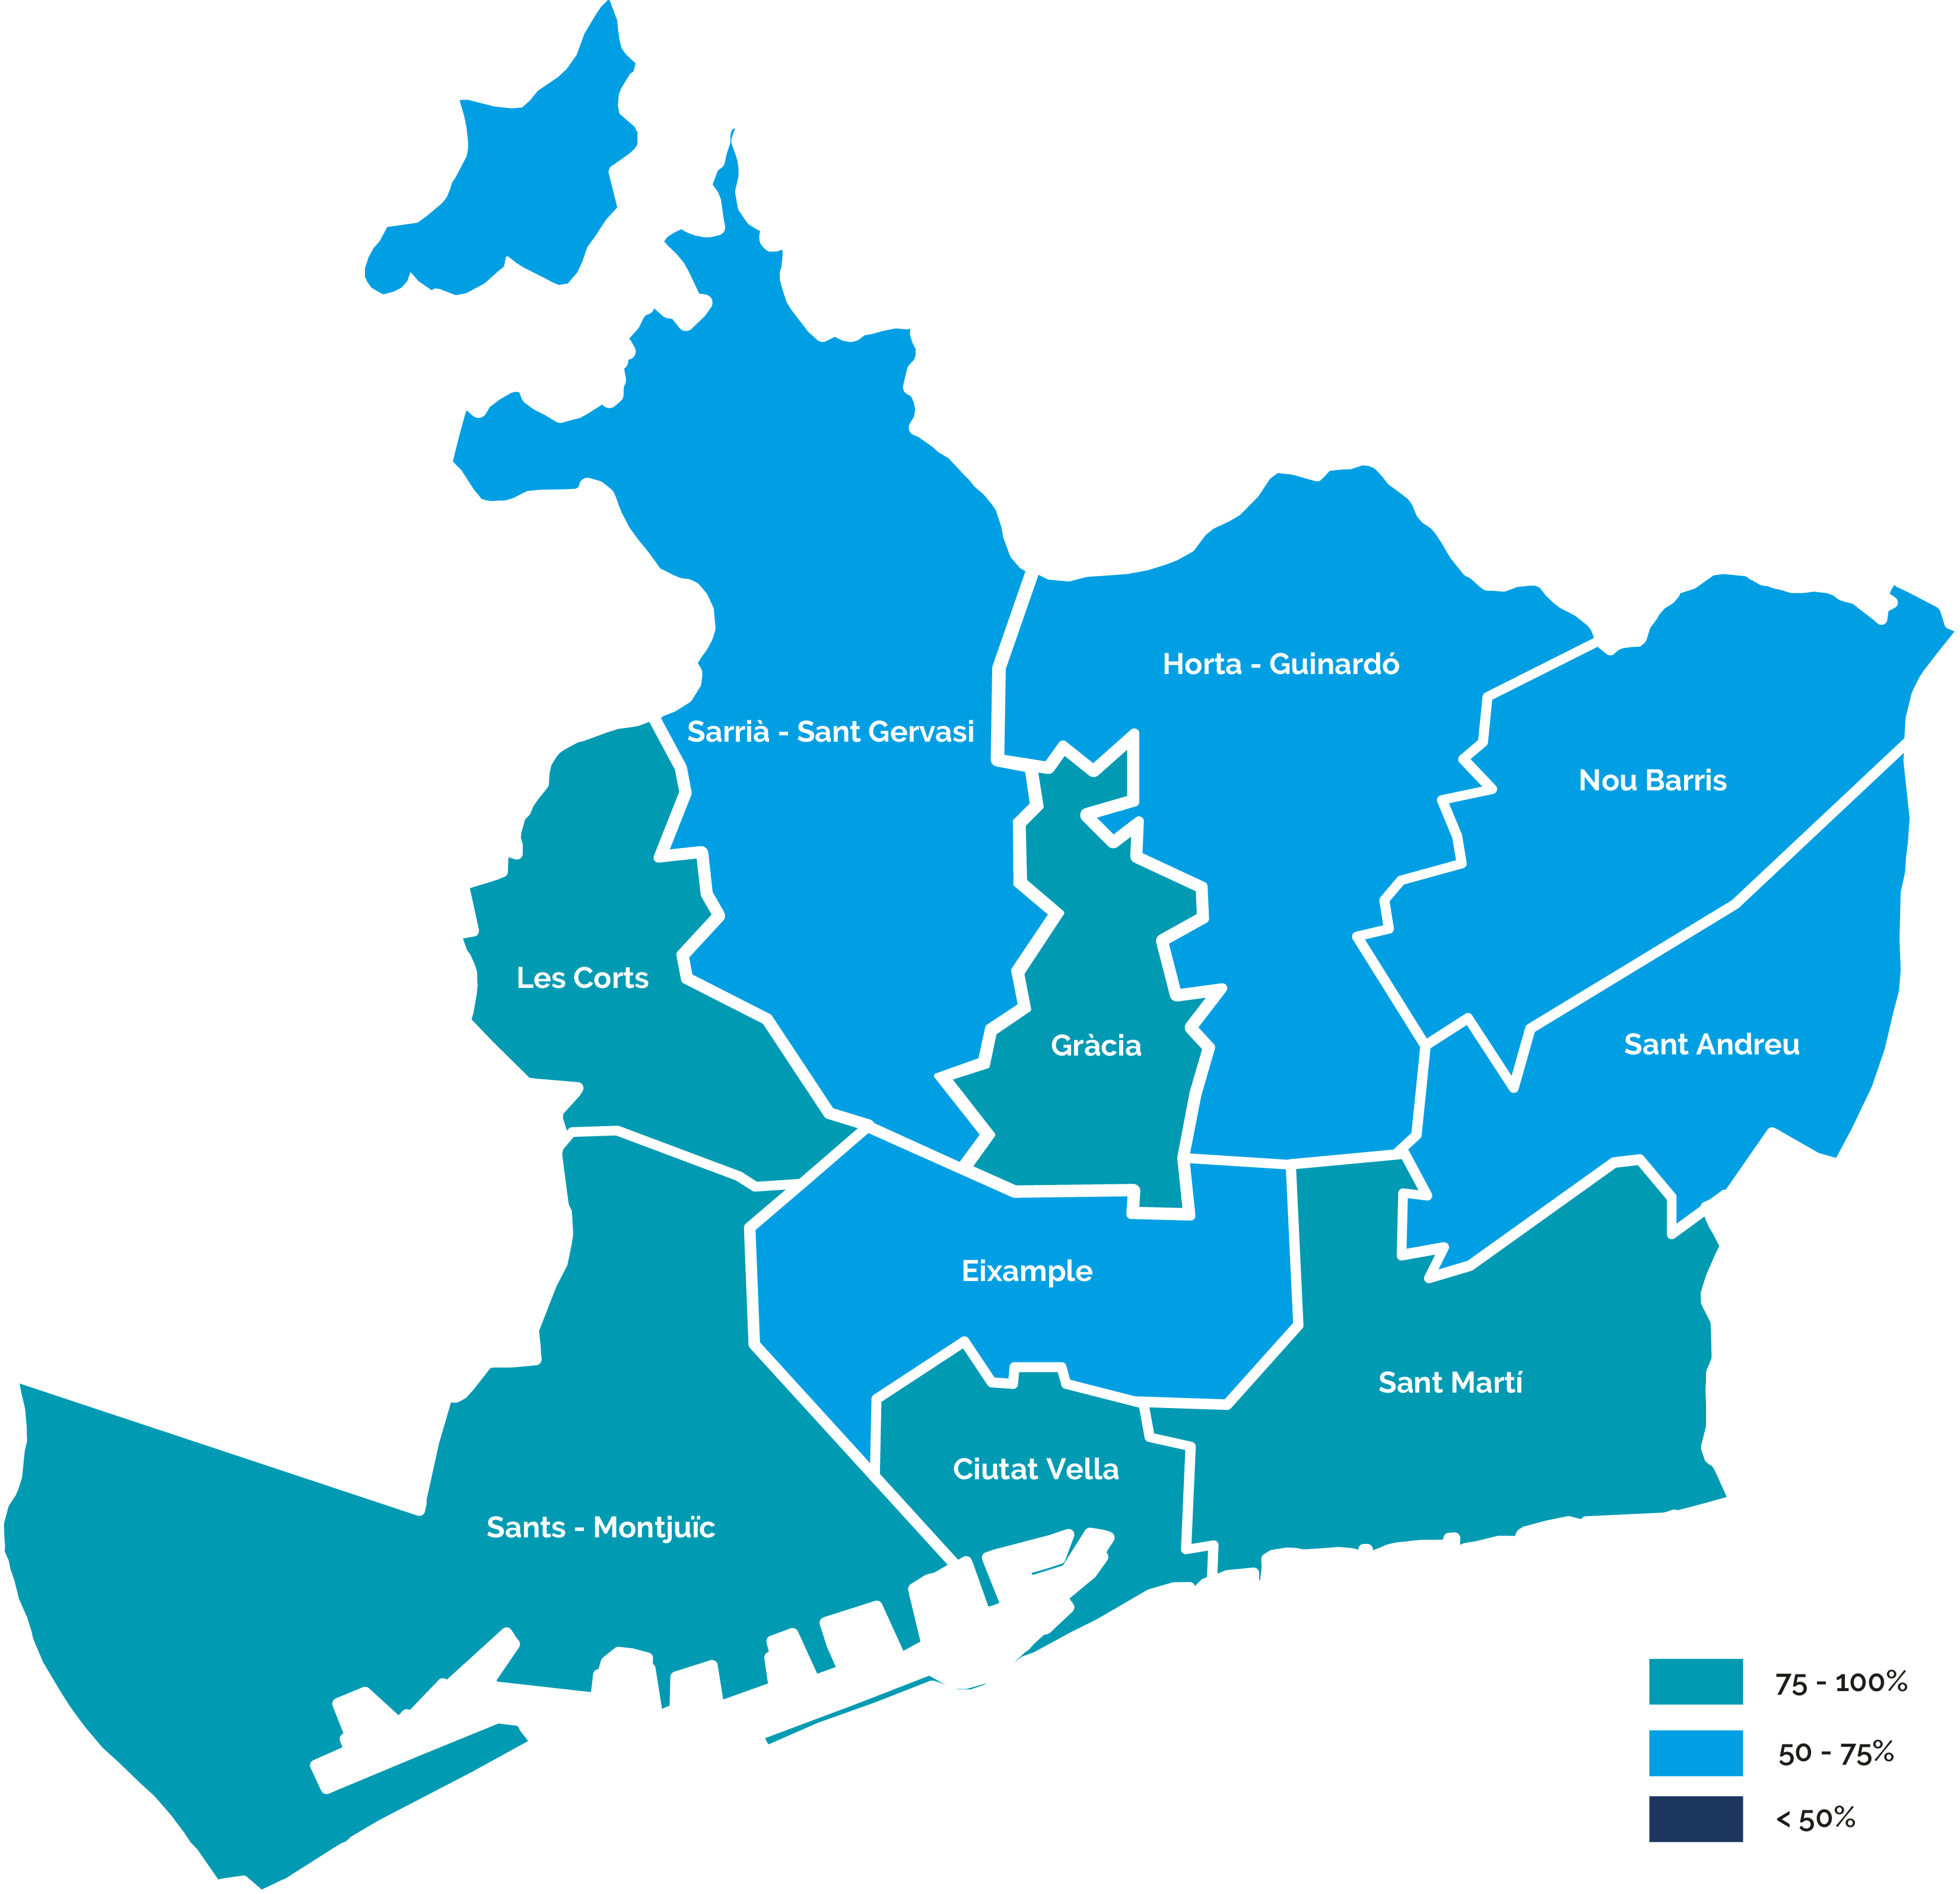 Mapa del nivell de desplegament de telelectura per districtes